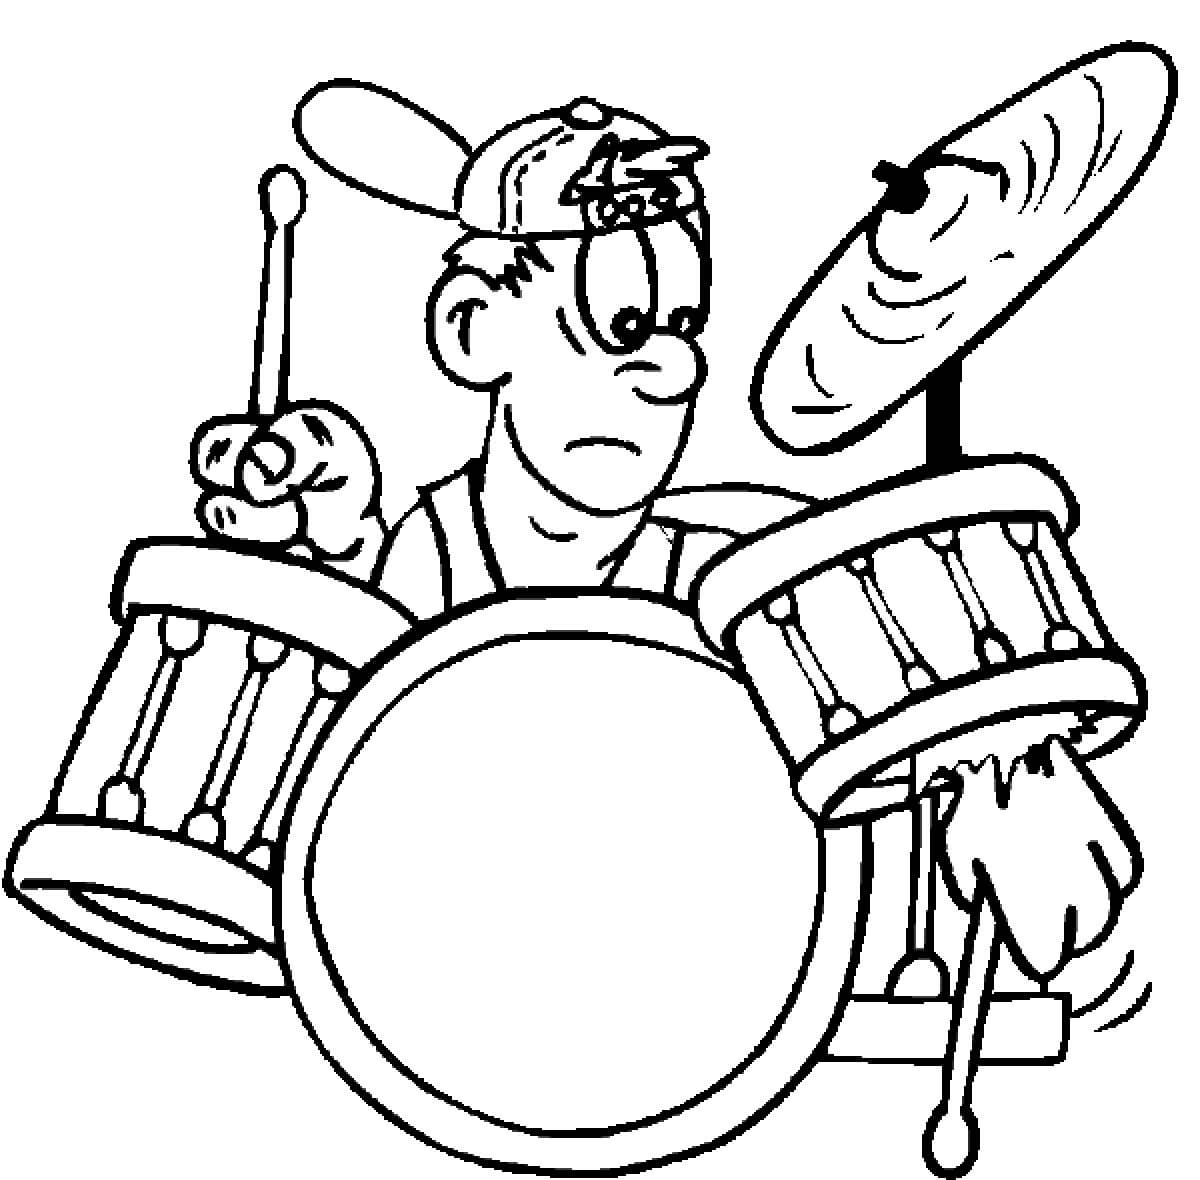 Schlagzeuger spielt Schlagzeug